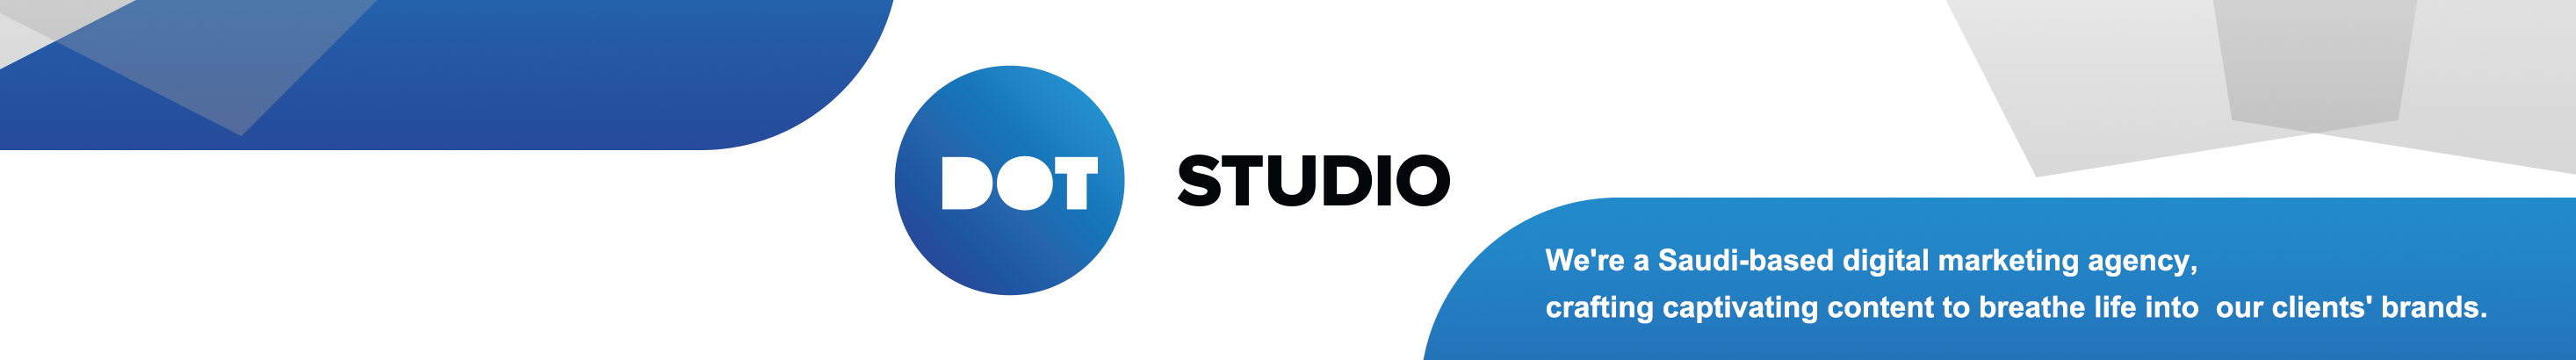 Banner de perfil de Dot Studio